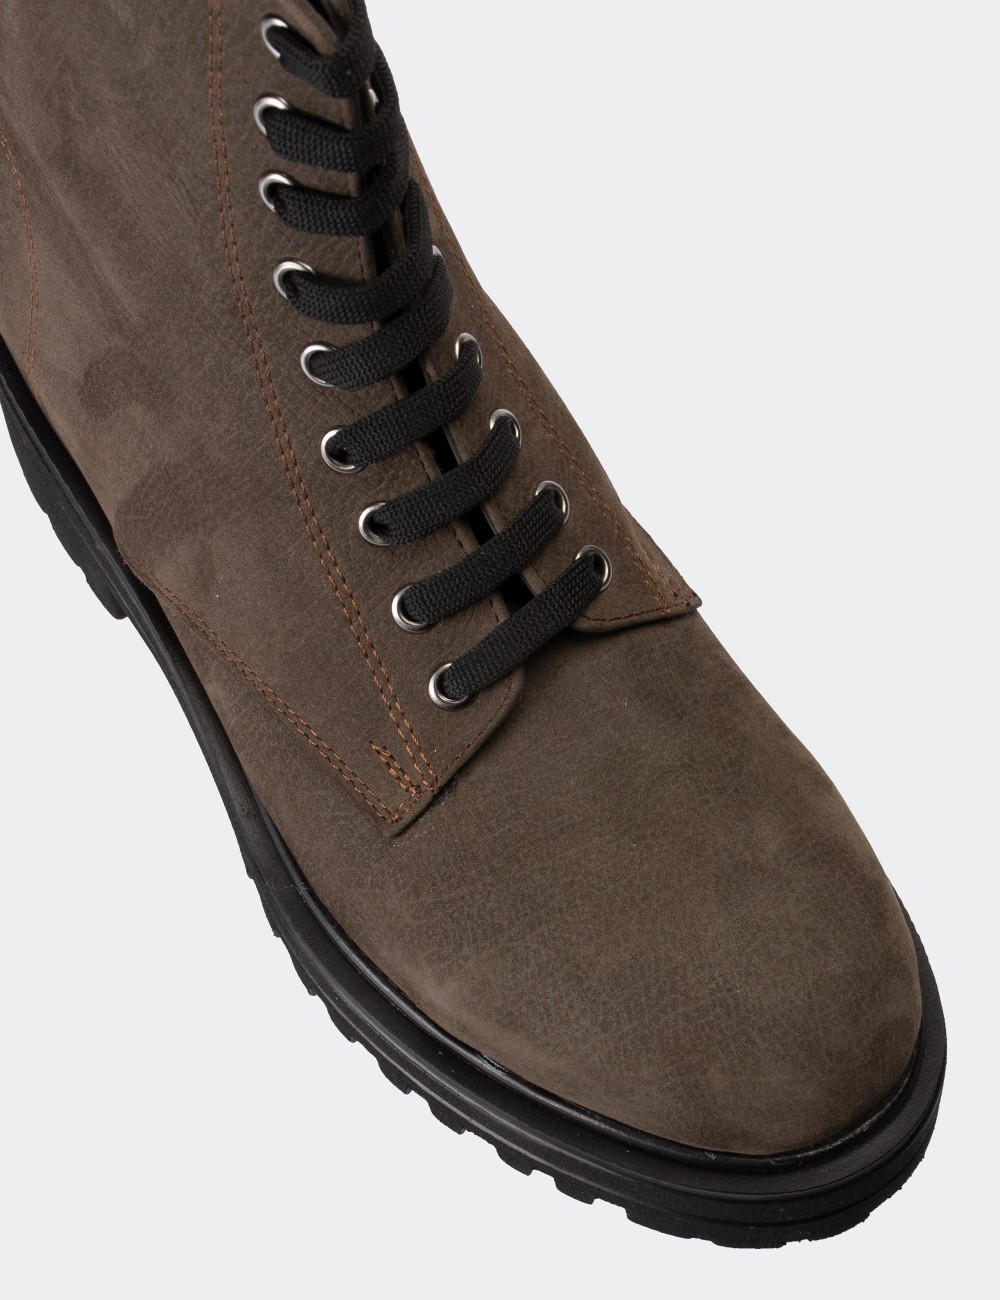 Sandstone Nubuck Leather Boots - 01814ZVZNE04